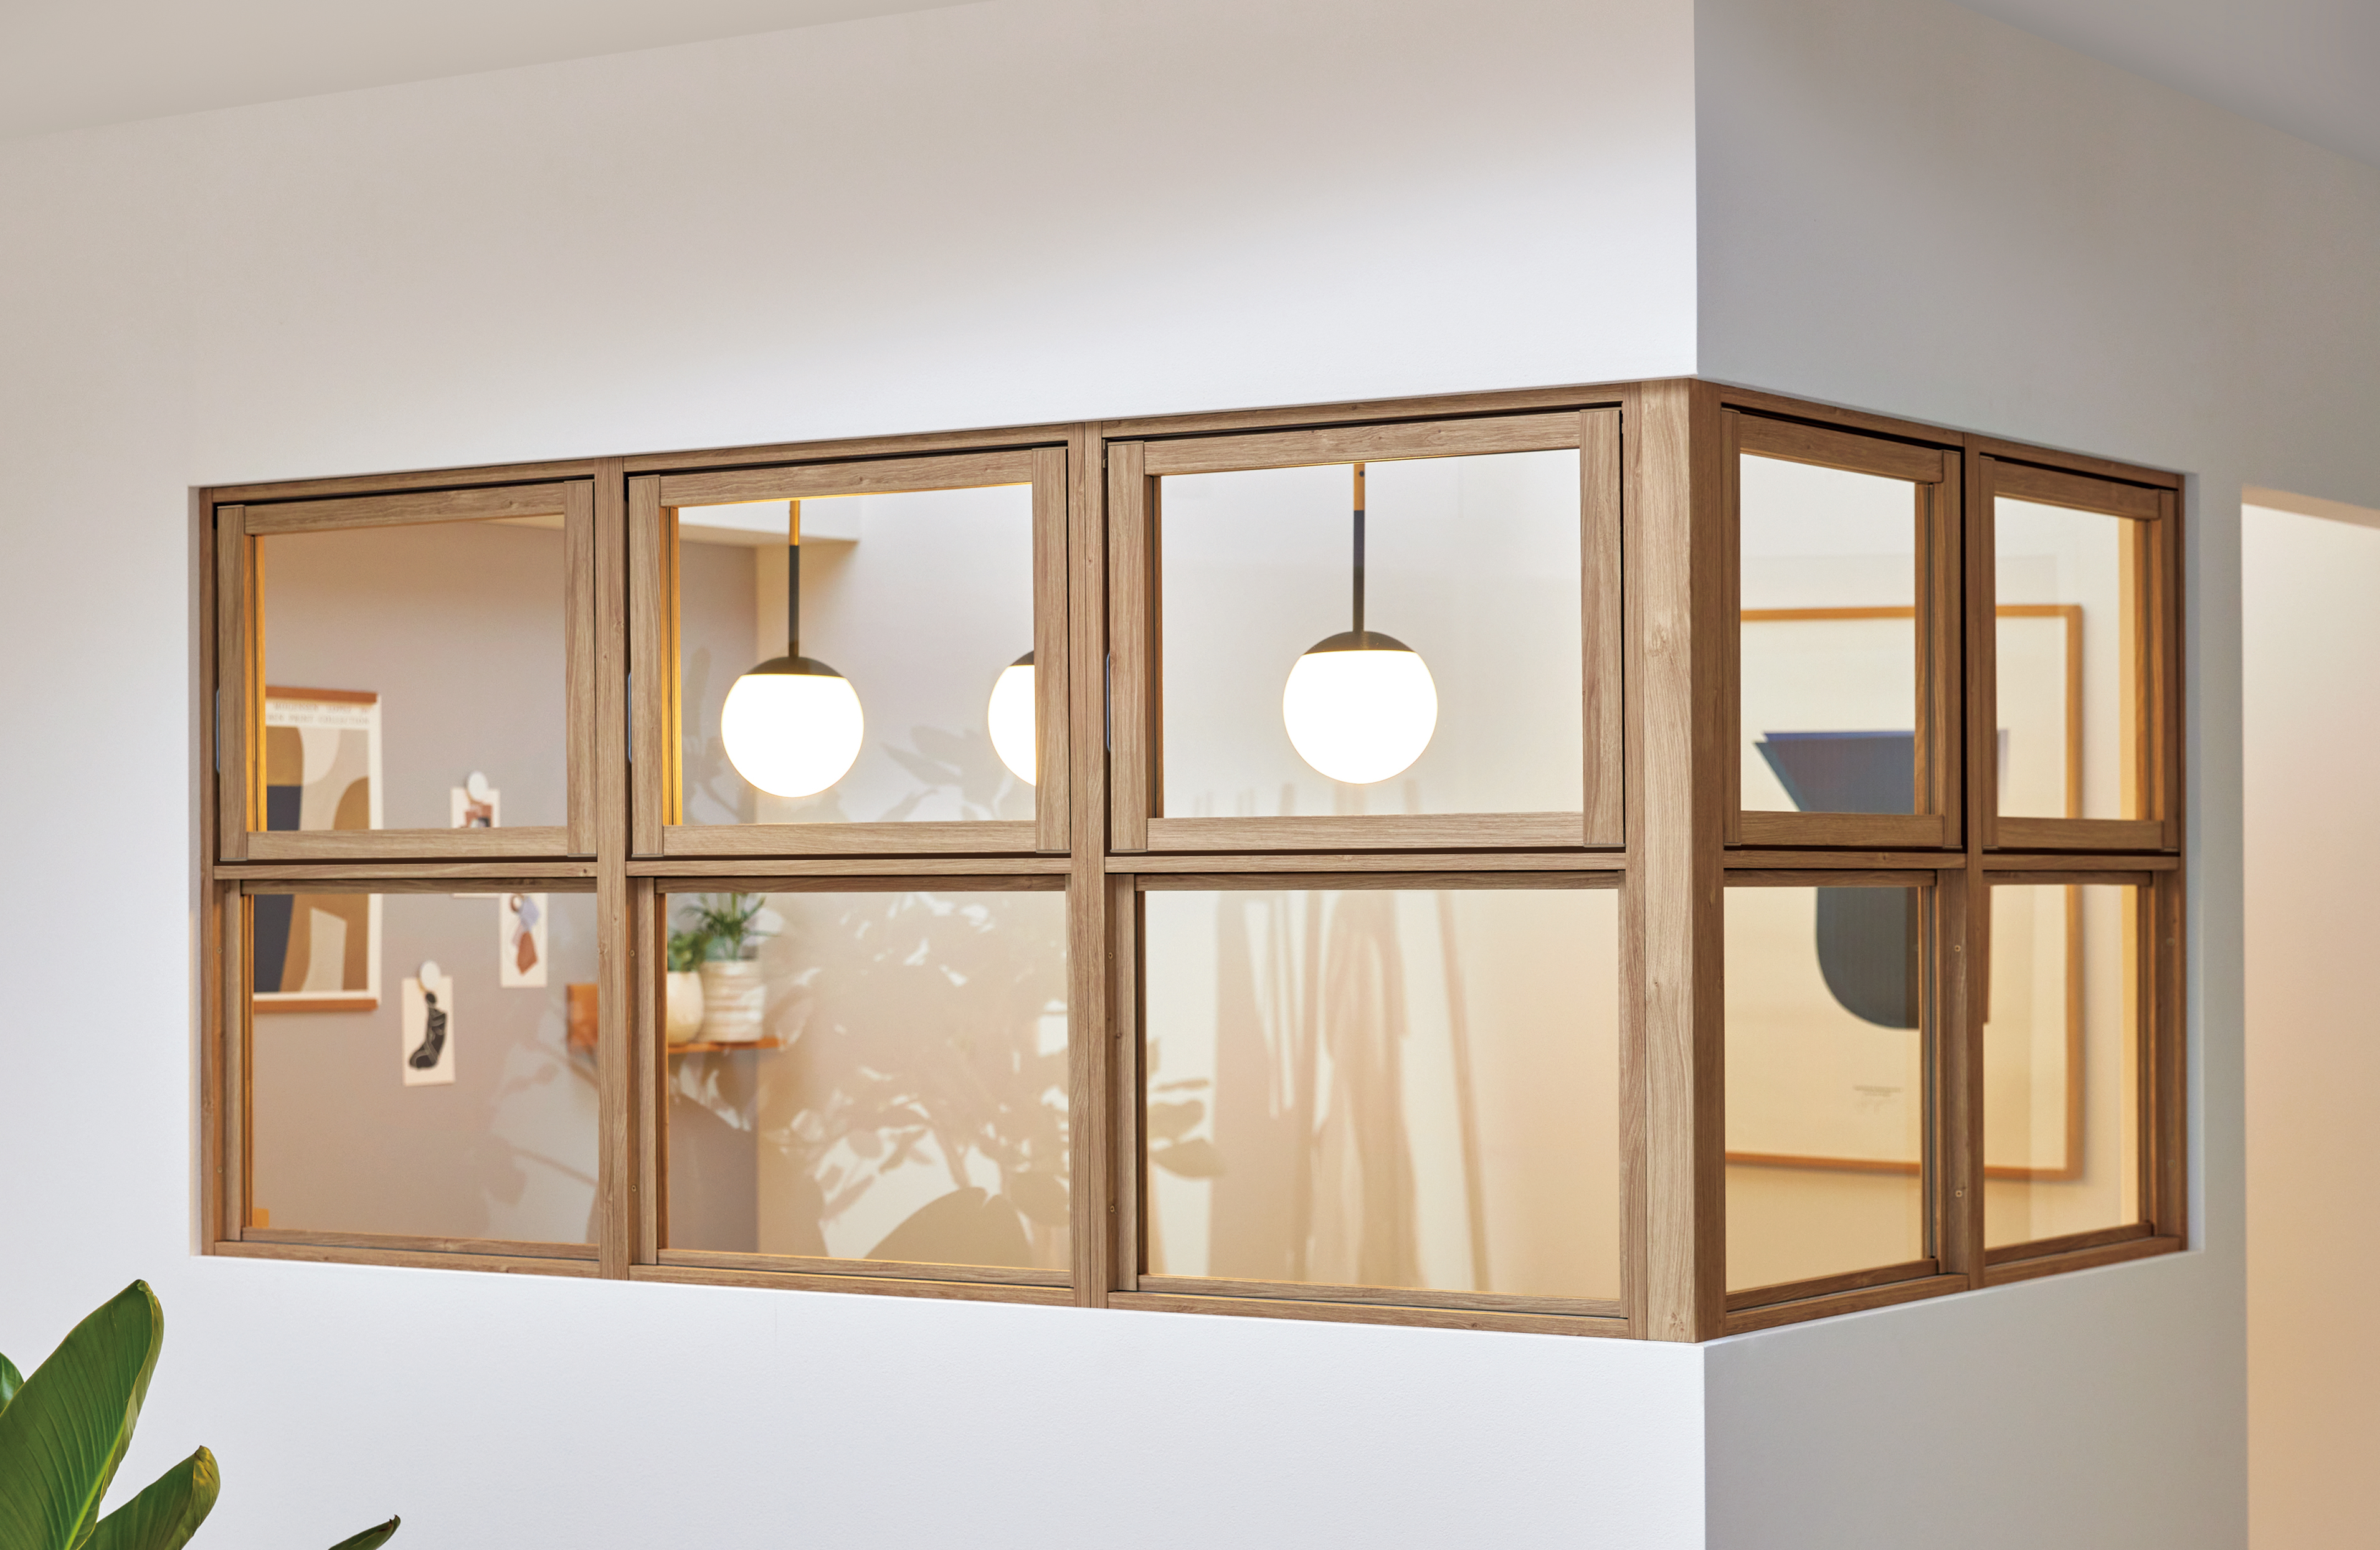 空間を仕切りながらも緩やかにつながり、光と風を取り込むことが可能な 室内用窓「デコマド」をリニューアル サムネイル画像